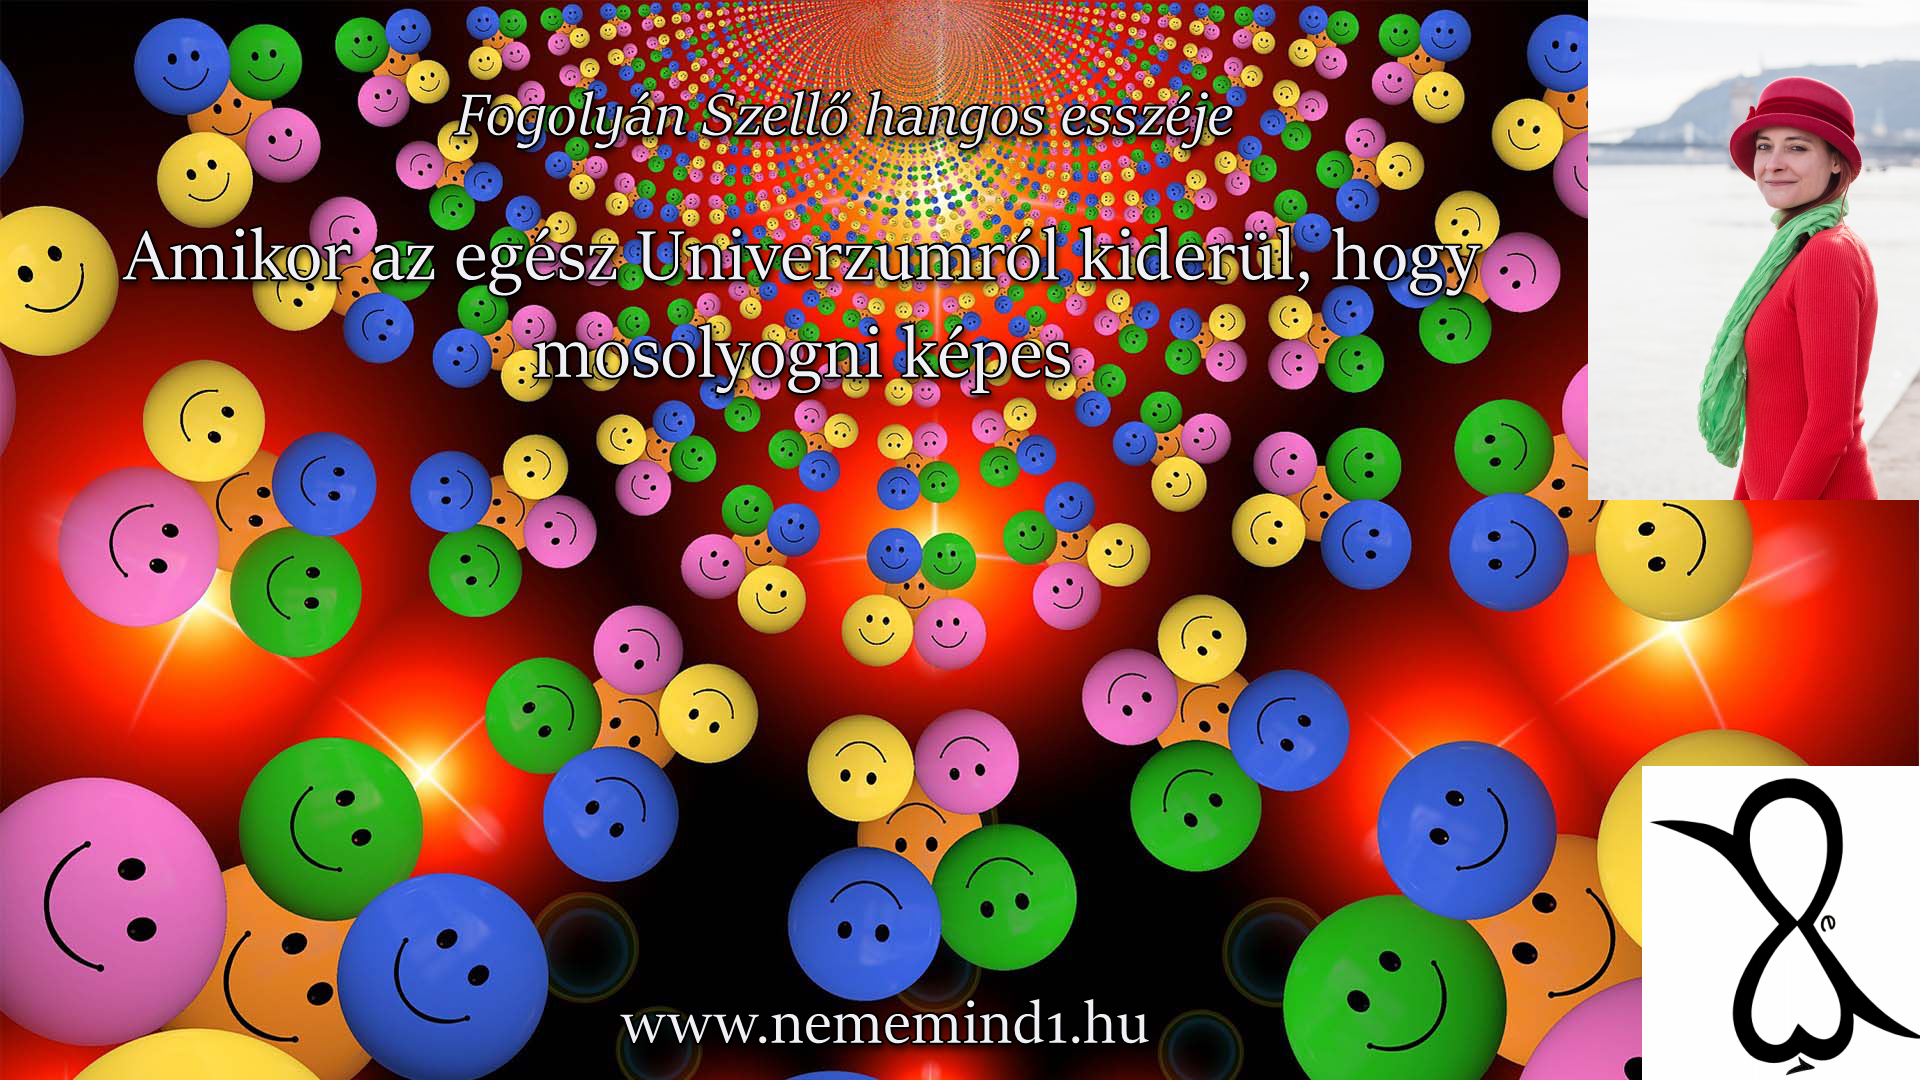 You are currently viewing Hangos Fogolyán Szellő (Harangi Emese) írások 29, Amikor az egész Univerzumról kiderül, hogy mosolyogni képes (Esszé)